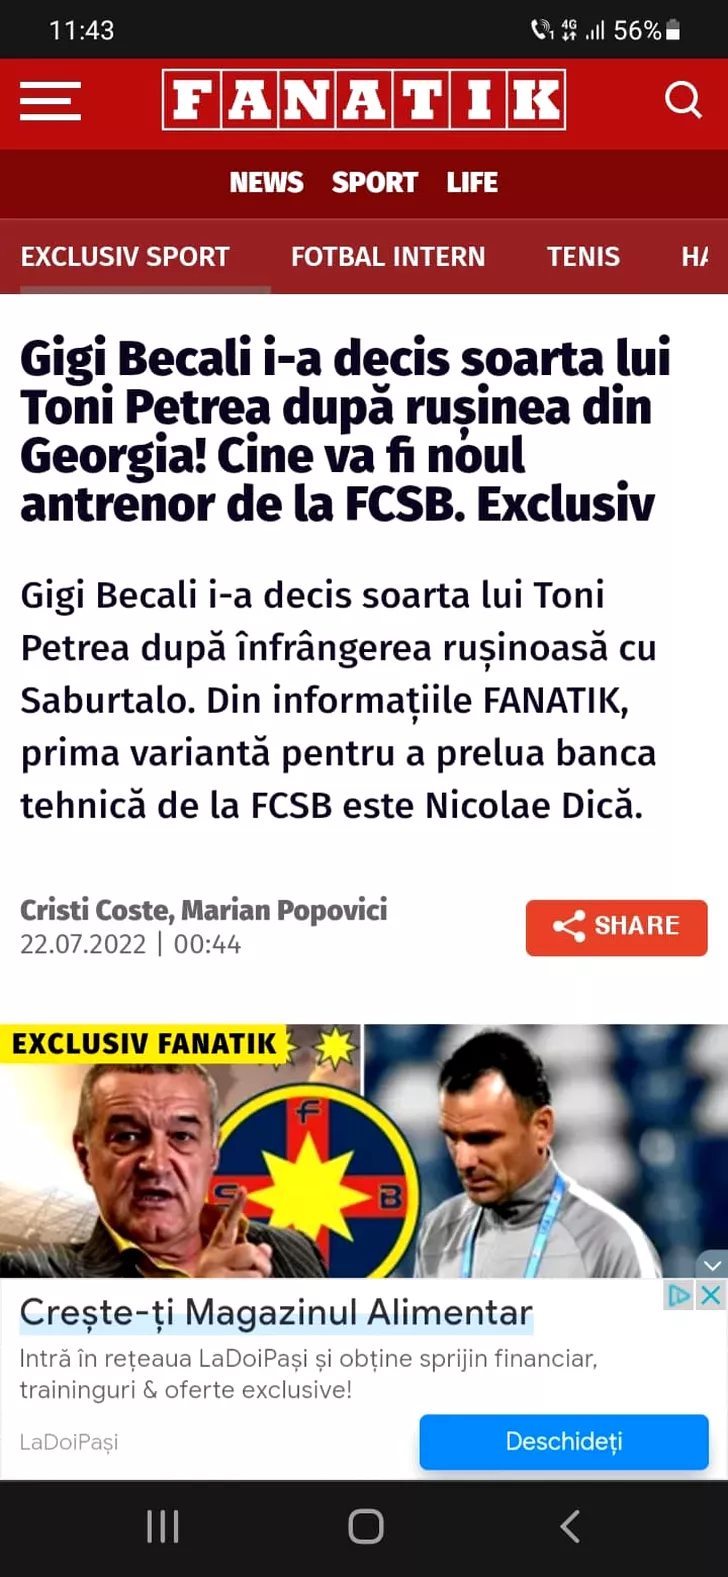 Culisele numirii lui Nicolae Dică la FCSB, anunțate de FANATIK. Sursa: captură Fanatik